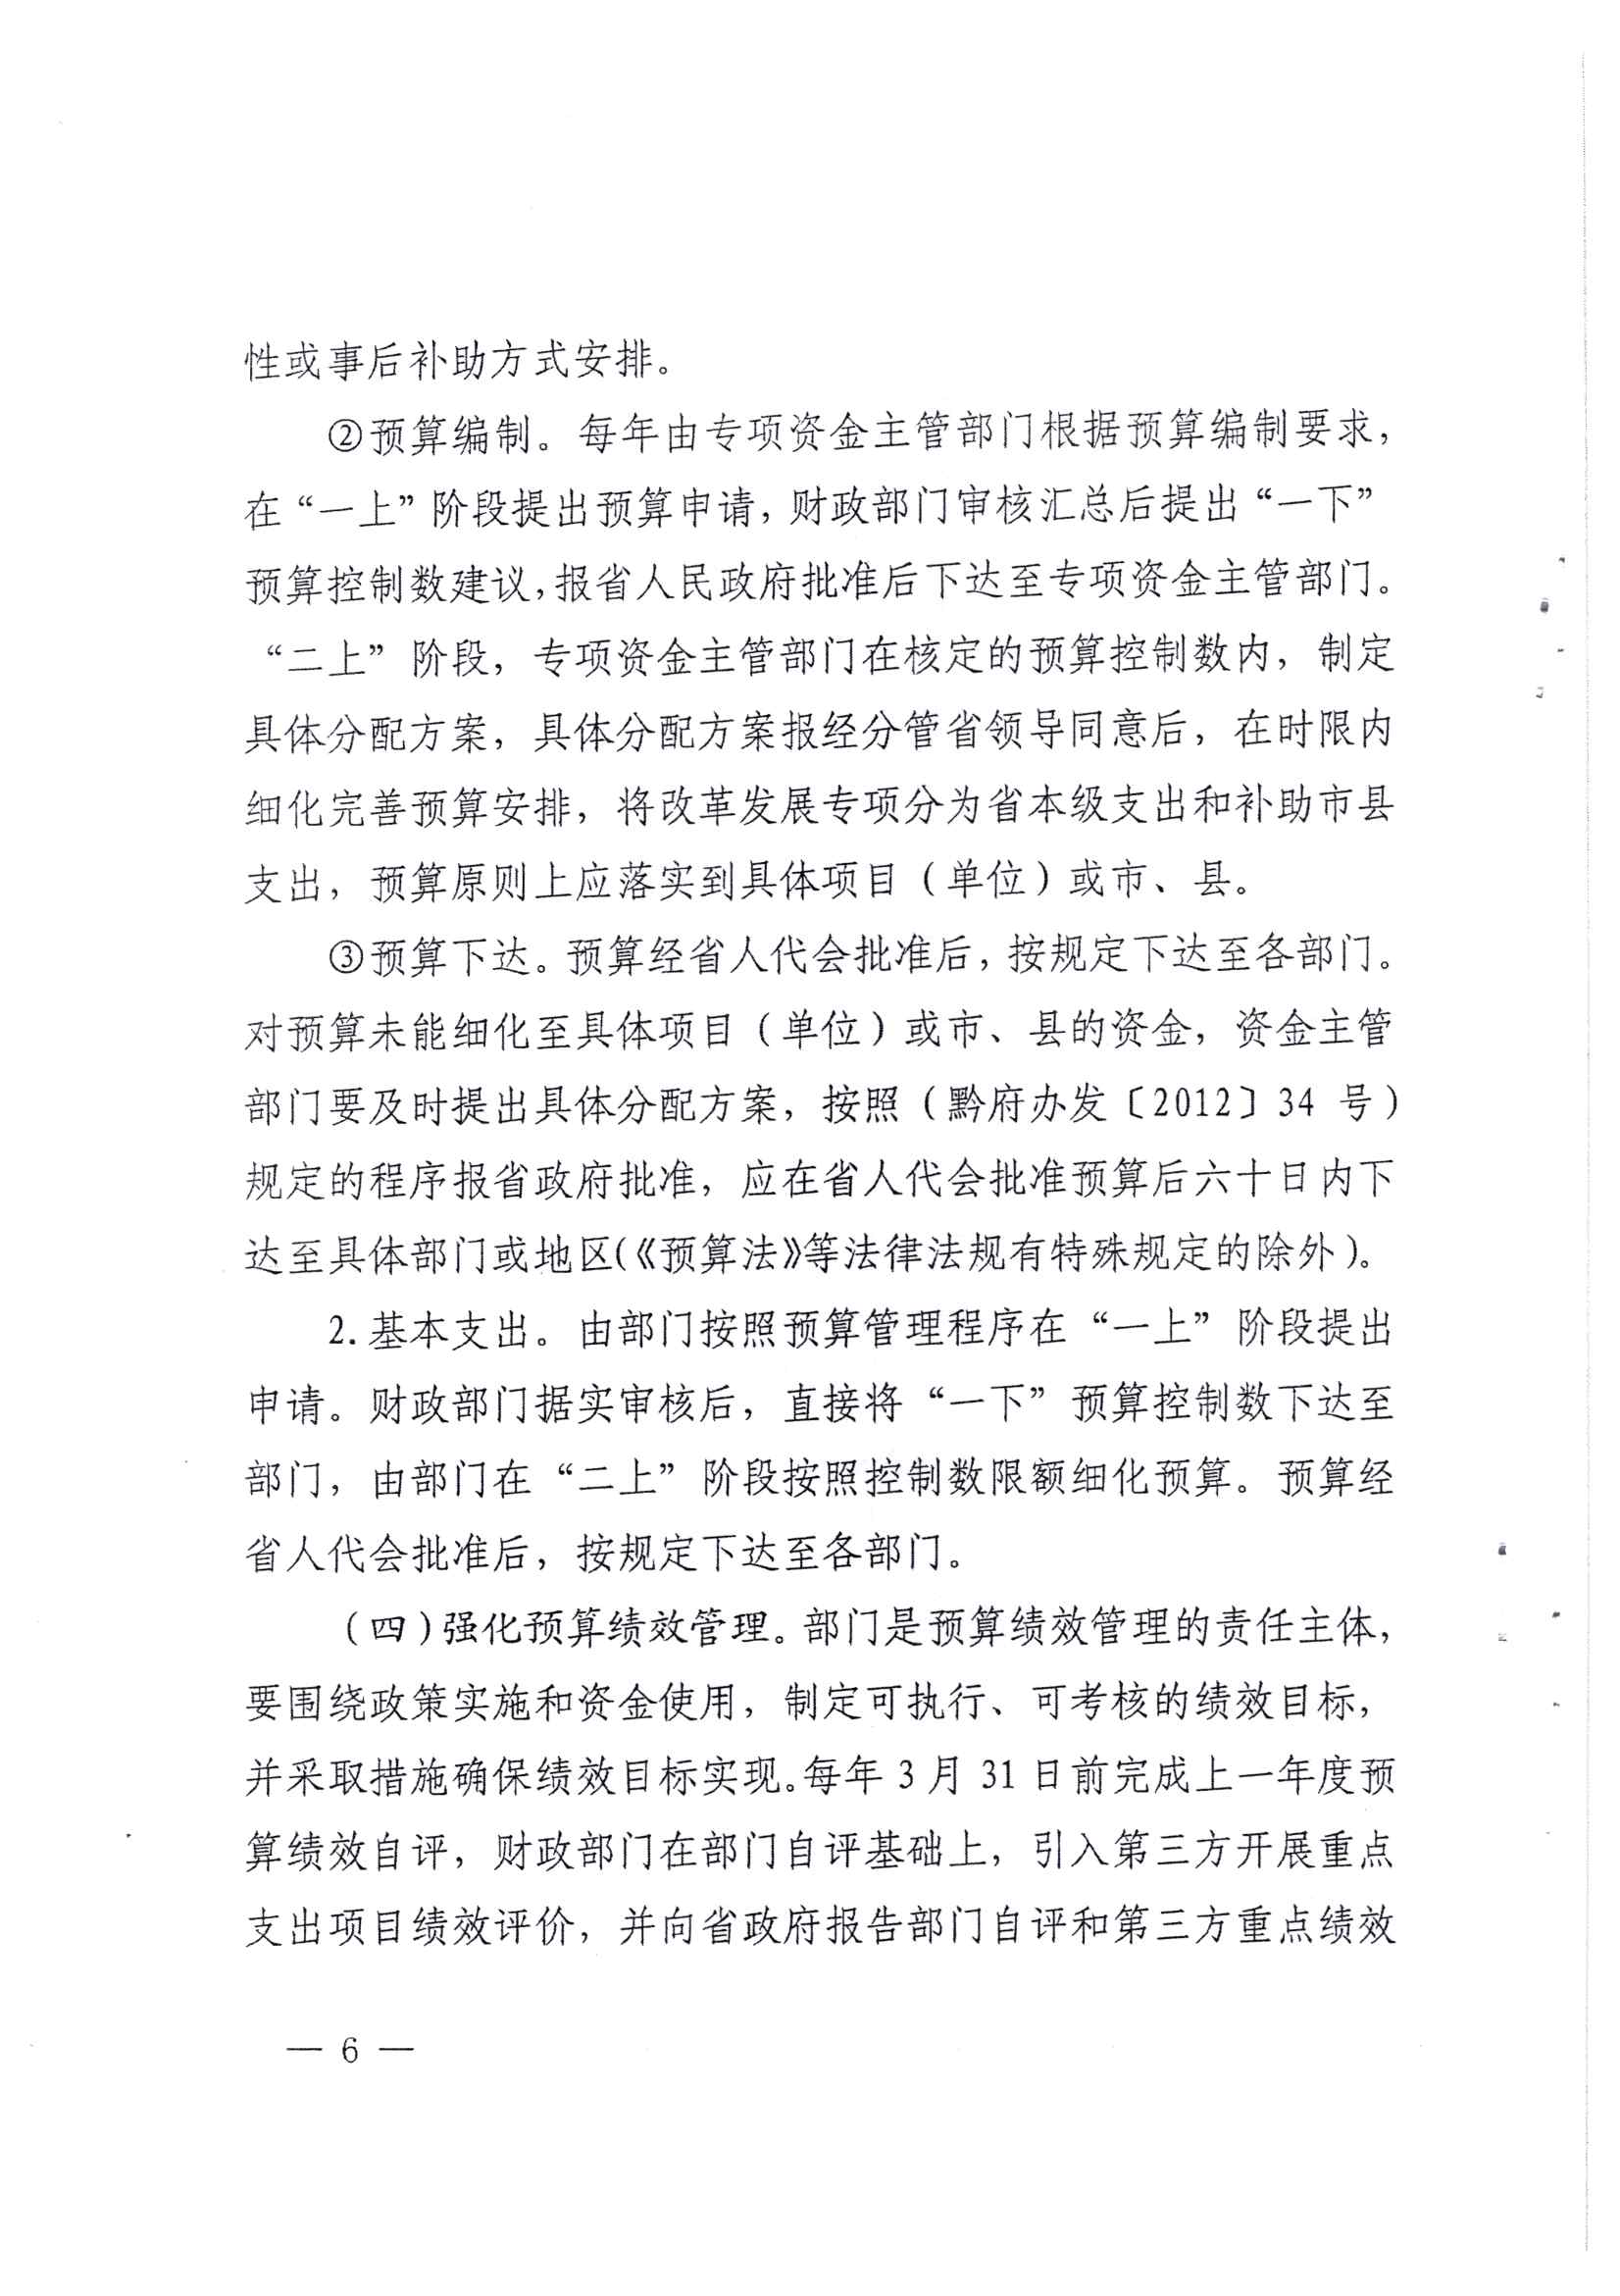 贵州省财政厅关于印发推进省级部门支出预算管理改革方案的通知_页面_6.jpg